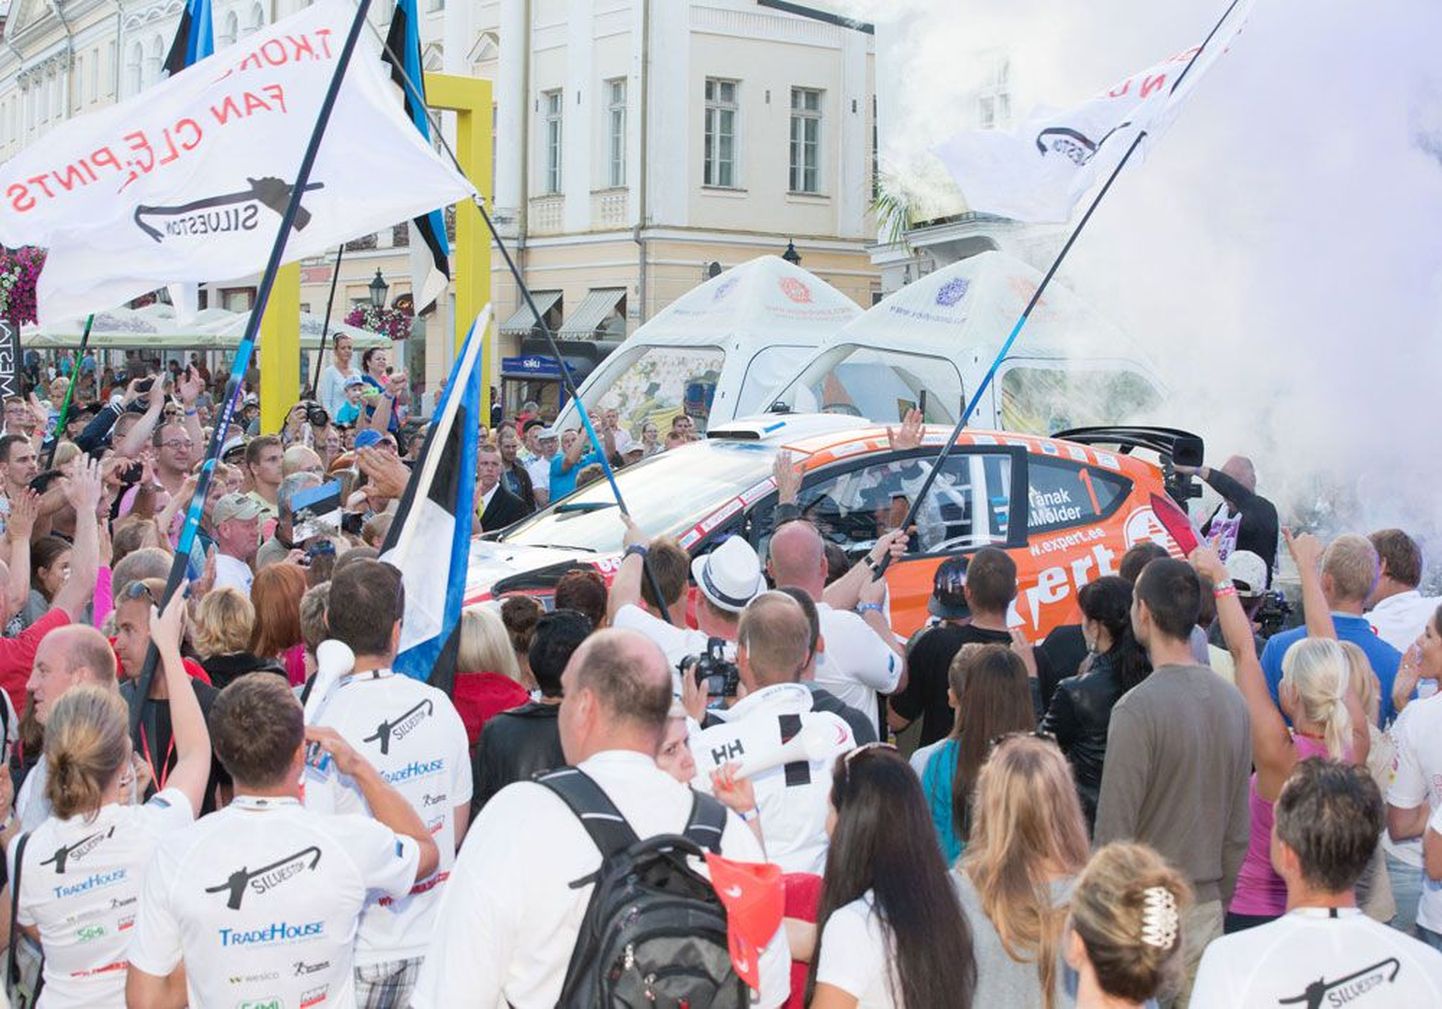 Rally Estonia до сих пор располагала самым крупным бюджетом и наибольшим числом зрителей среди всех авторалли в Эстонии.